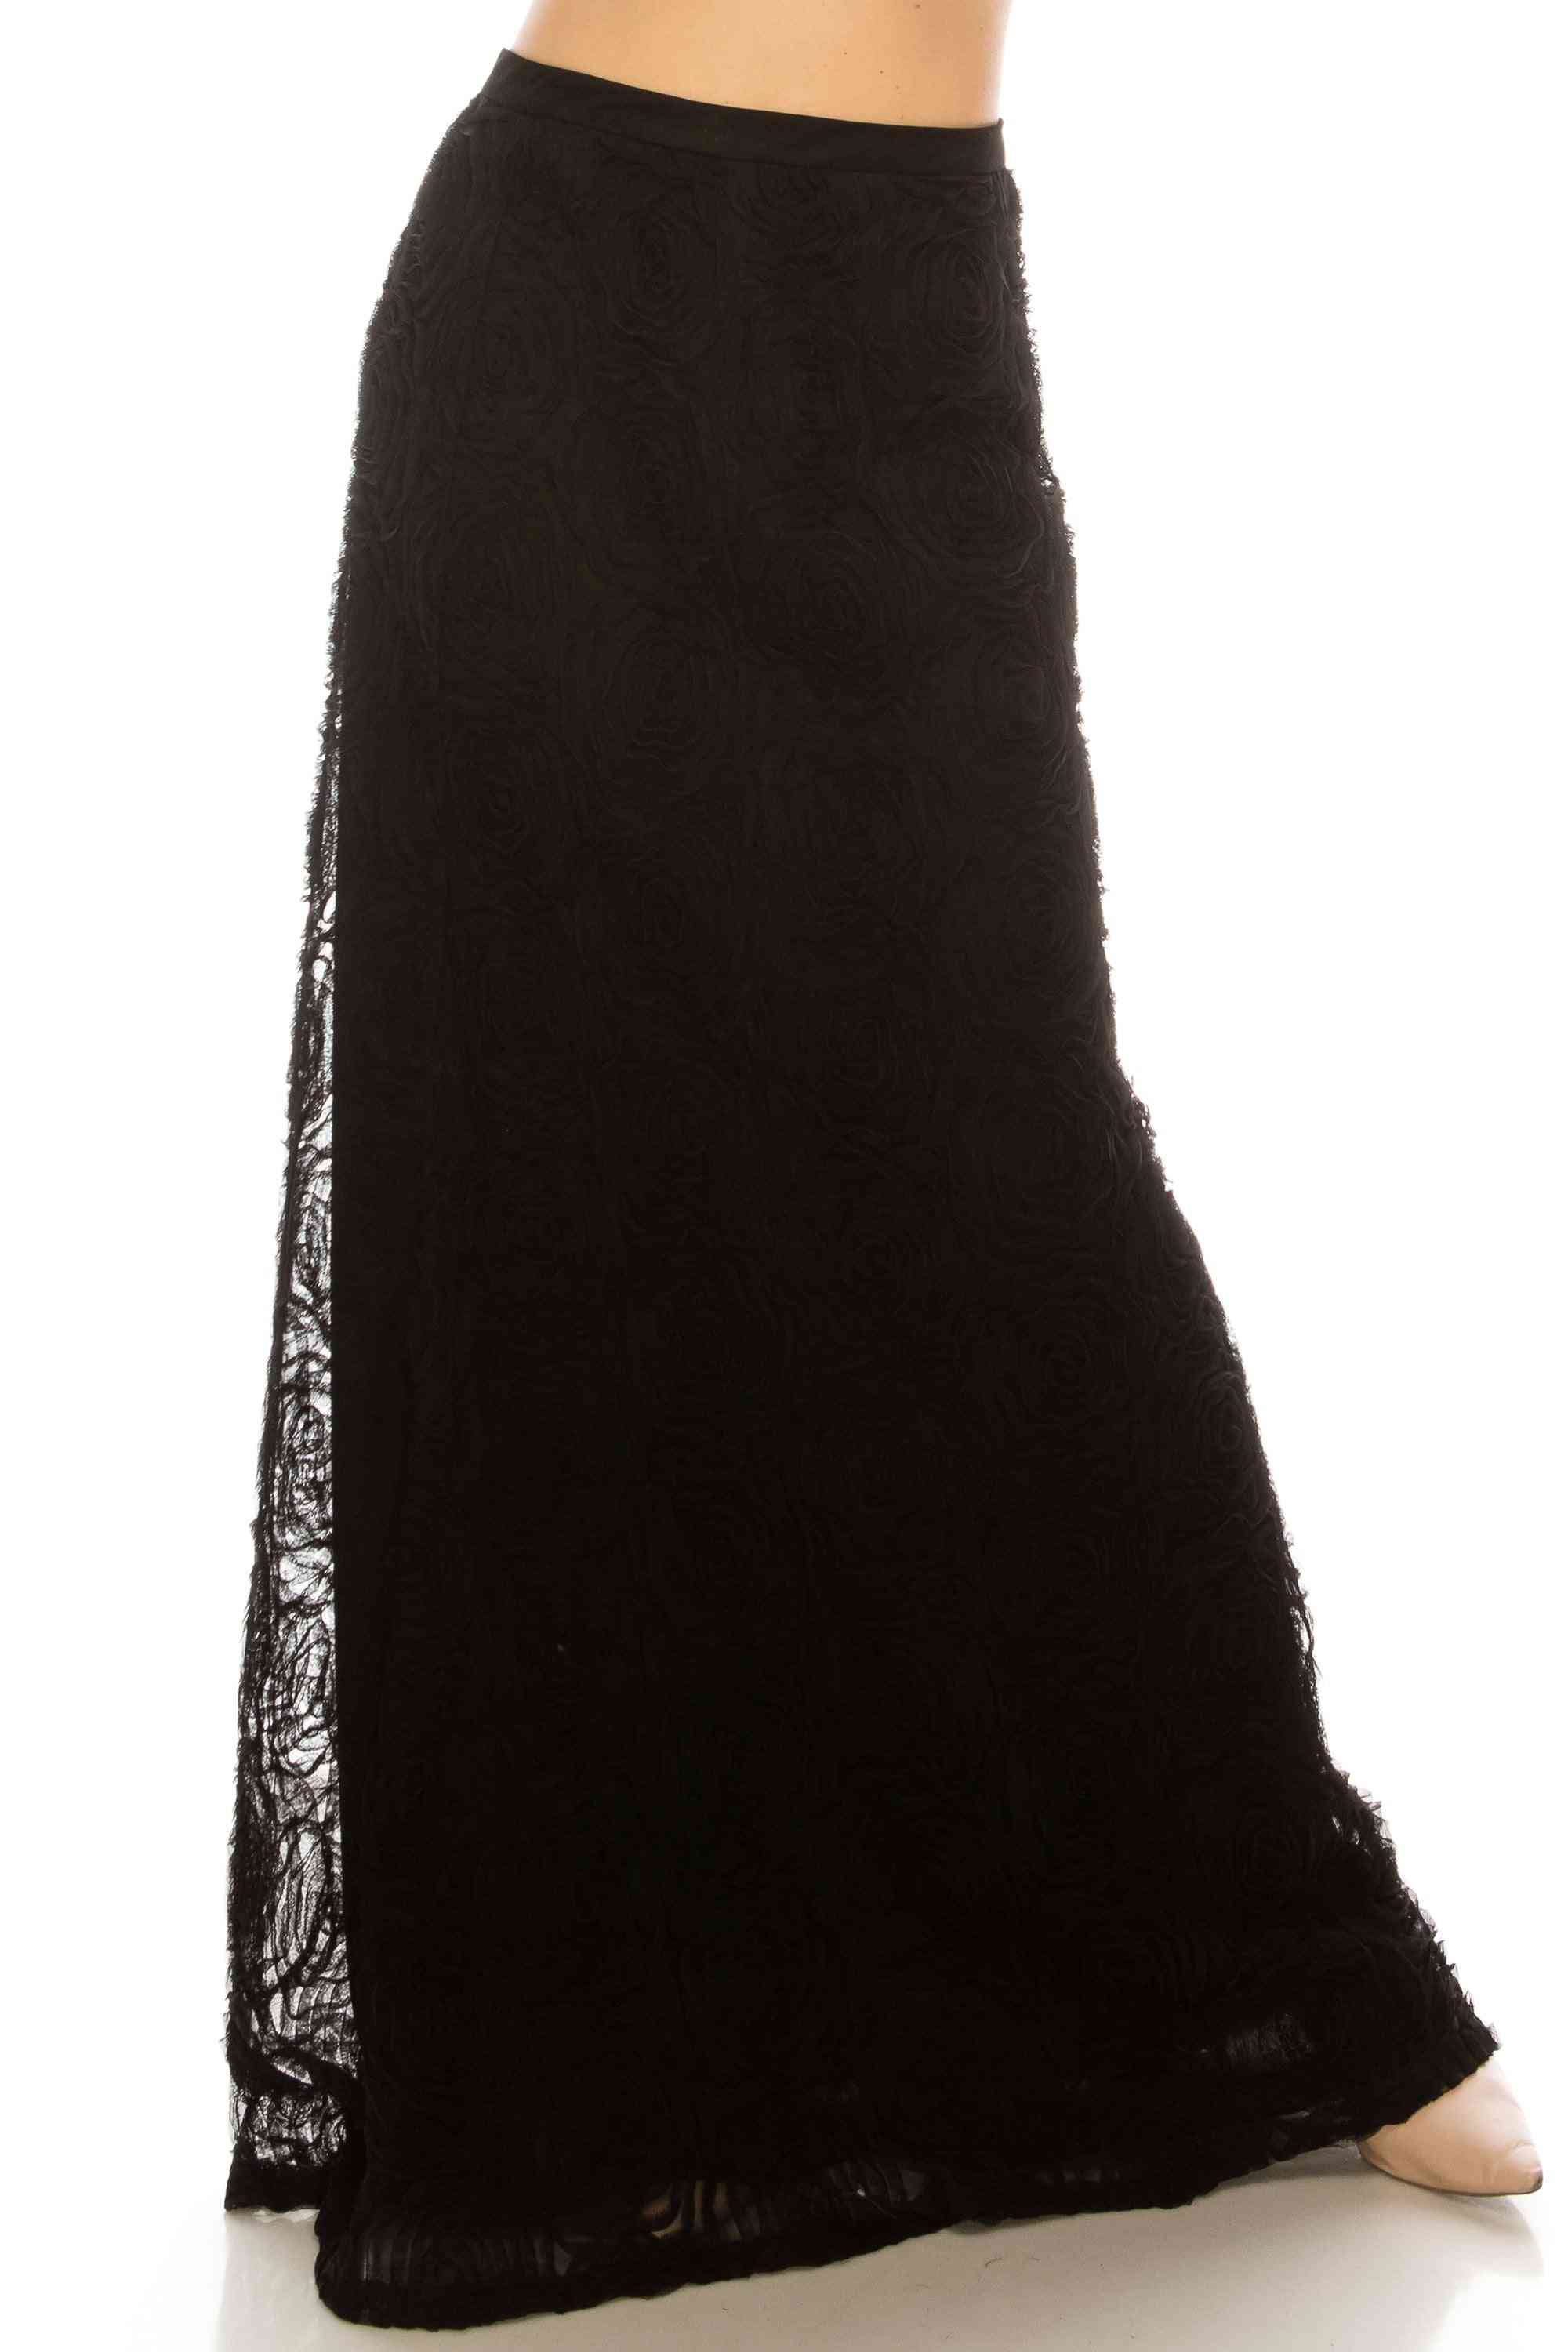 Black High Waisted, A-line Full Length Skirt